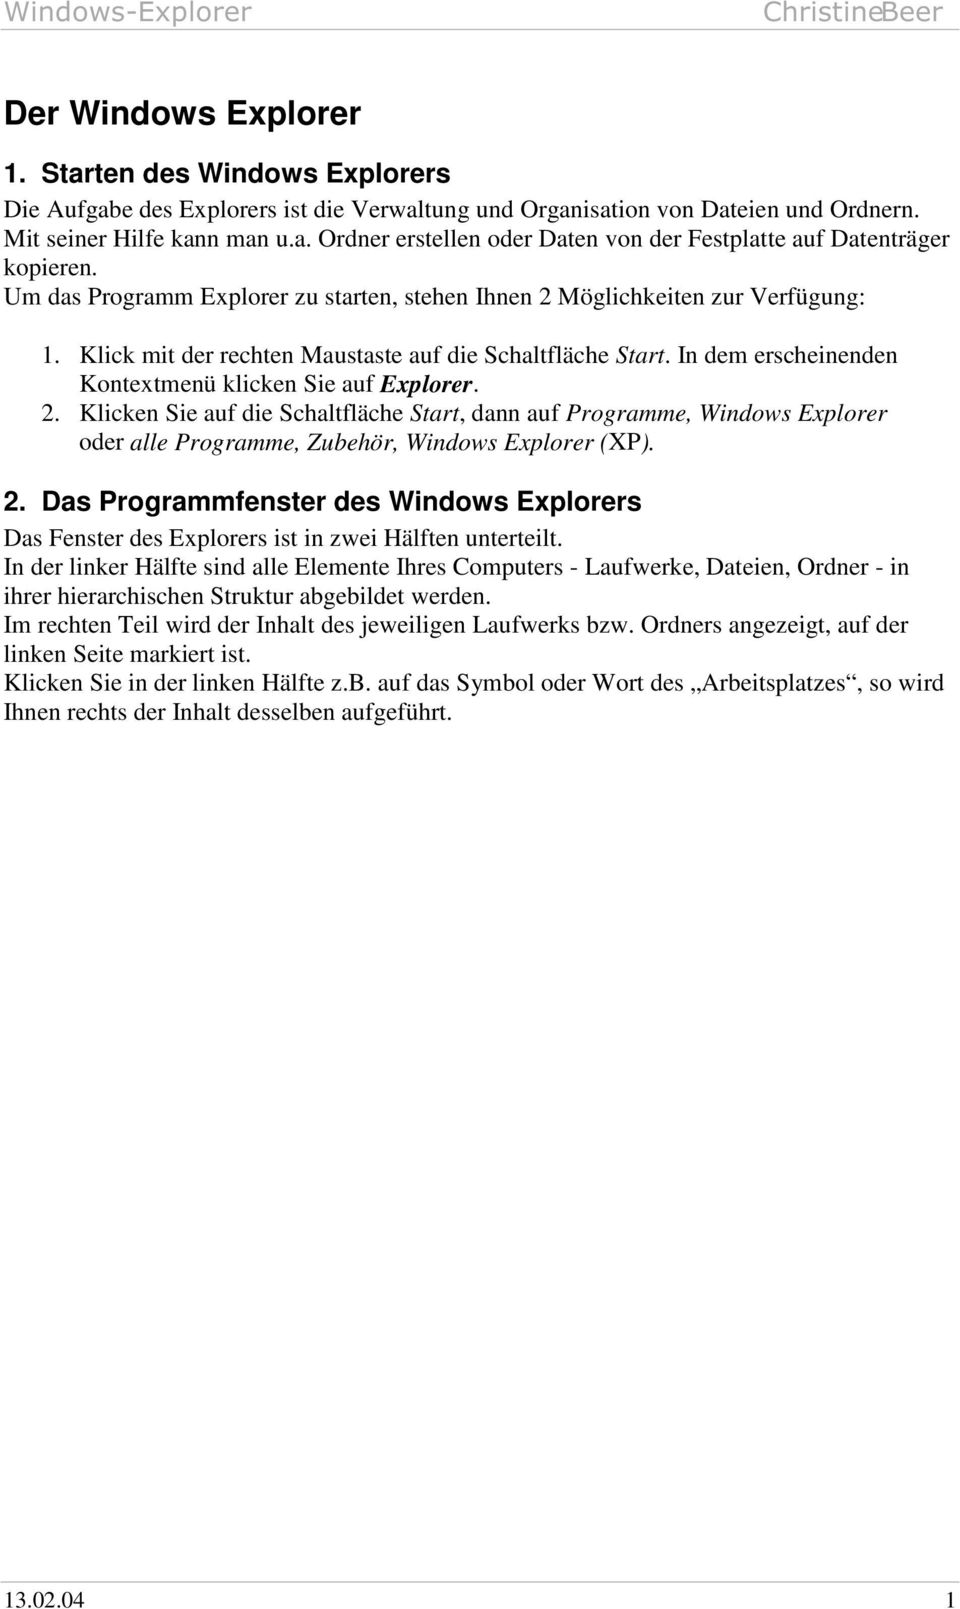 In dem erscheinenden Kontextmenü klicken Sie auf Explorer. 2. Klicken Sie auf die Schaltfläche Start, dann auf Programme, Windows Explorer oder alle Programme, Zubehör, Windows Explorer (XP). 2. Das Programmfenster des Windows Explorers Das Fenster des Explorers ist in zwei Hälften unterteilt.